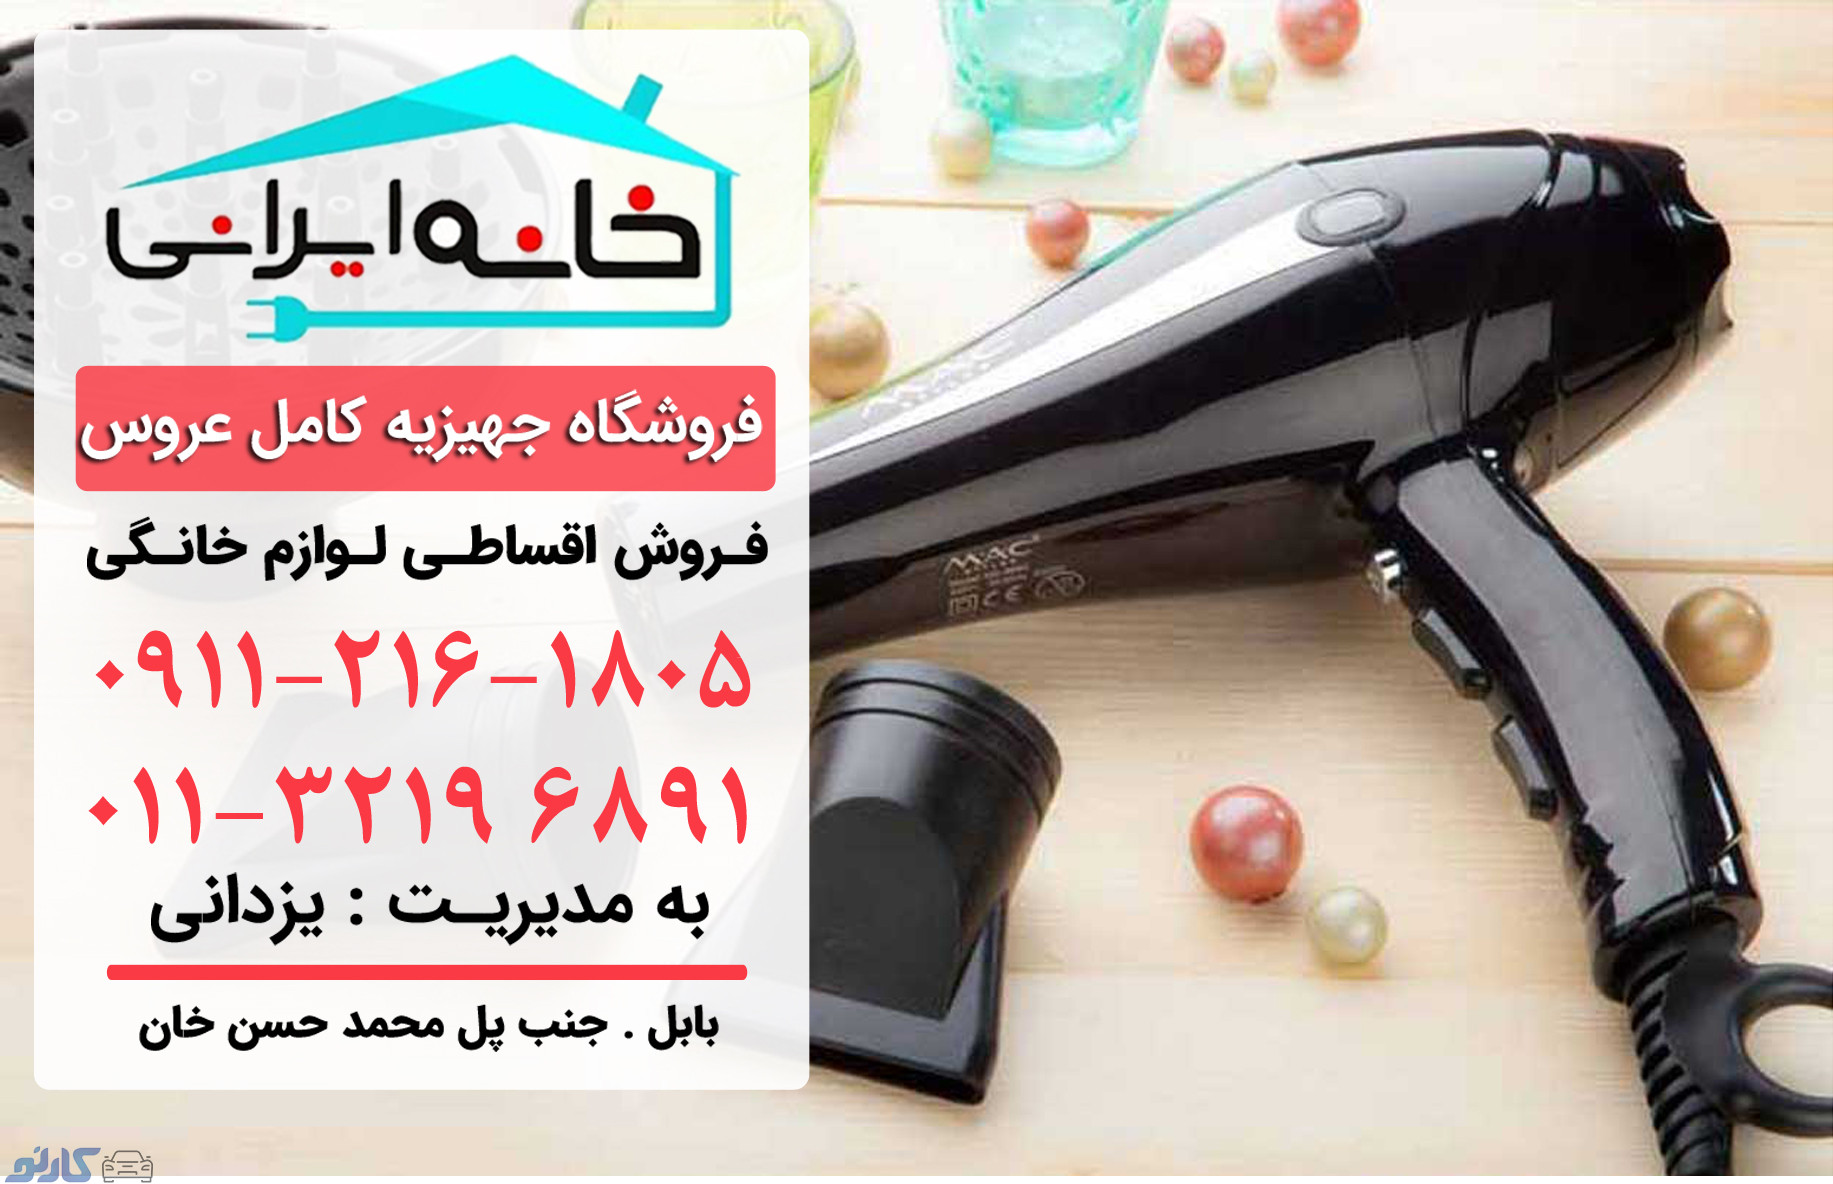 فروش اقساطی لوازم برقی آرایشی در قائمشهر و ساری | فروشگاه لوازم خانگی خانه ایرانی